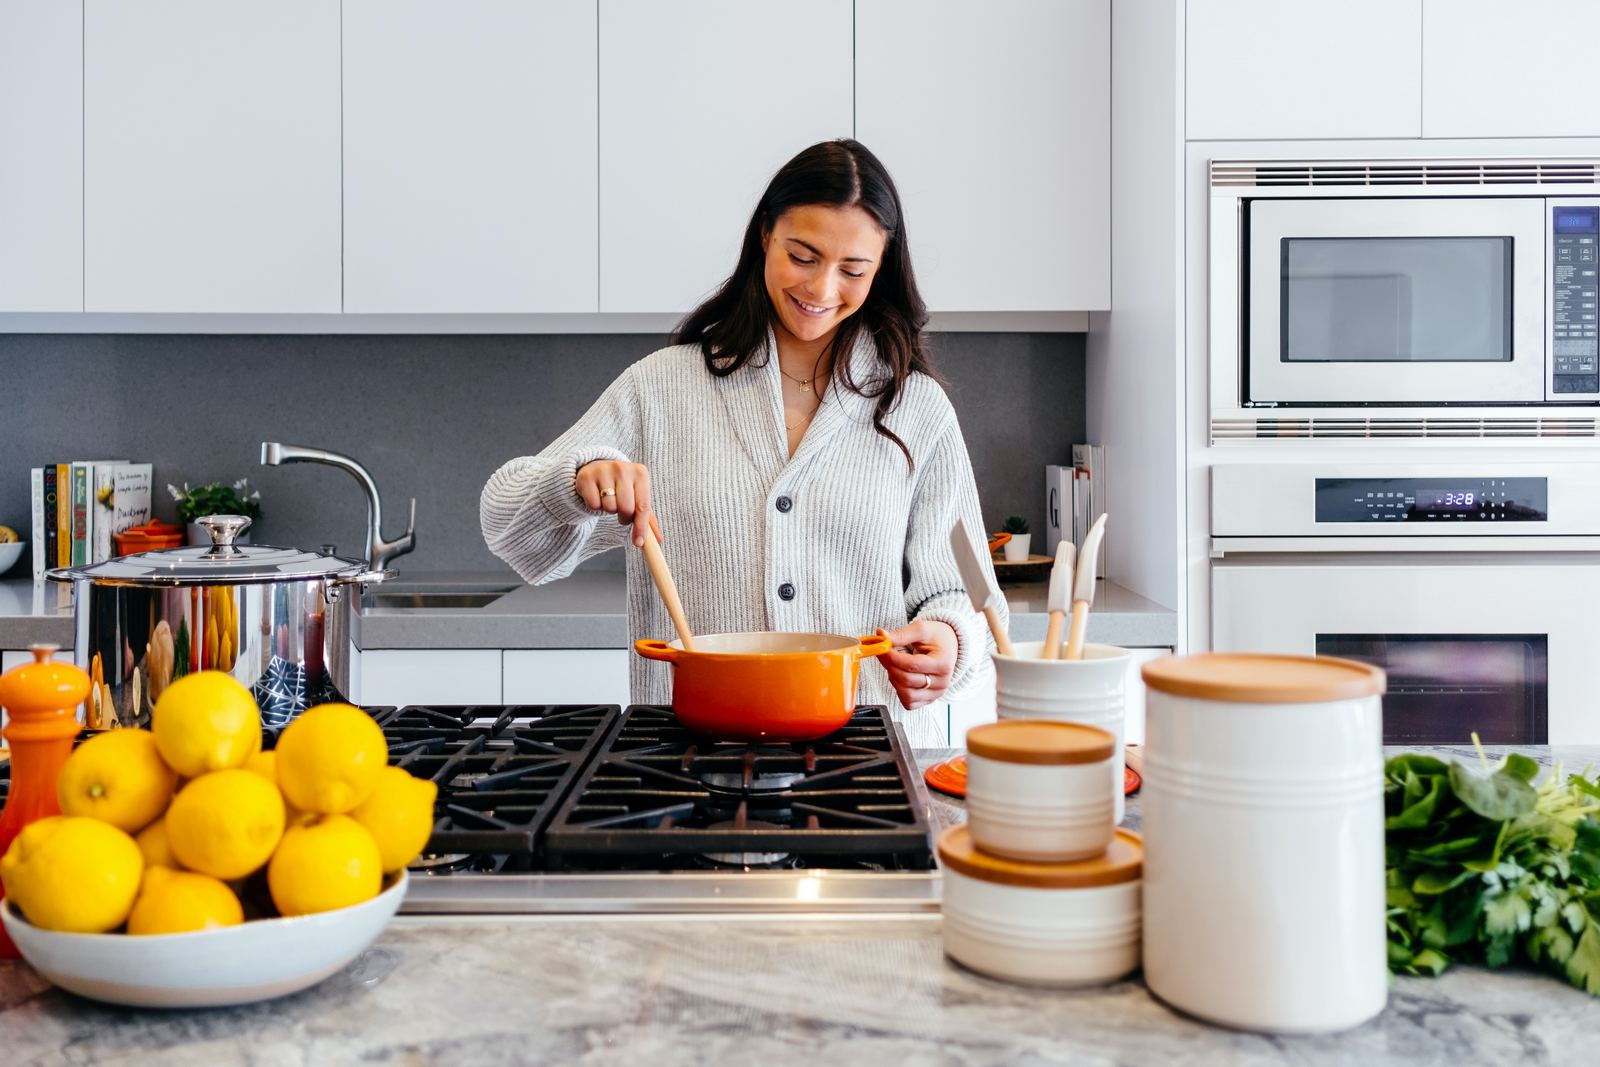 Cucina e risparmio: i consigli e le ricette salva energia